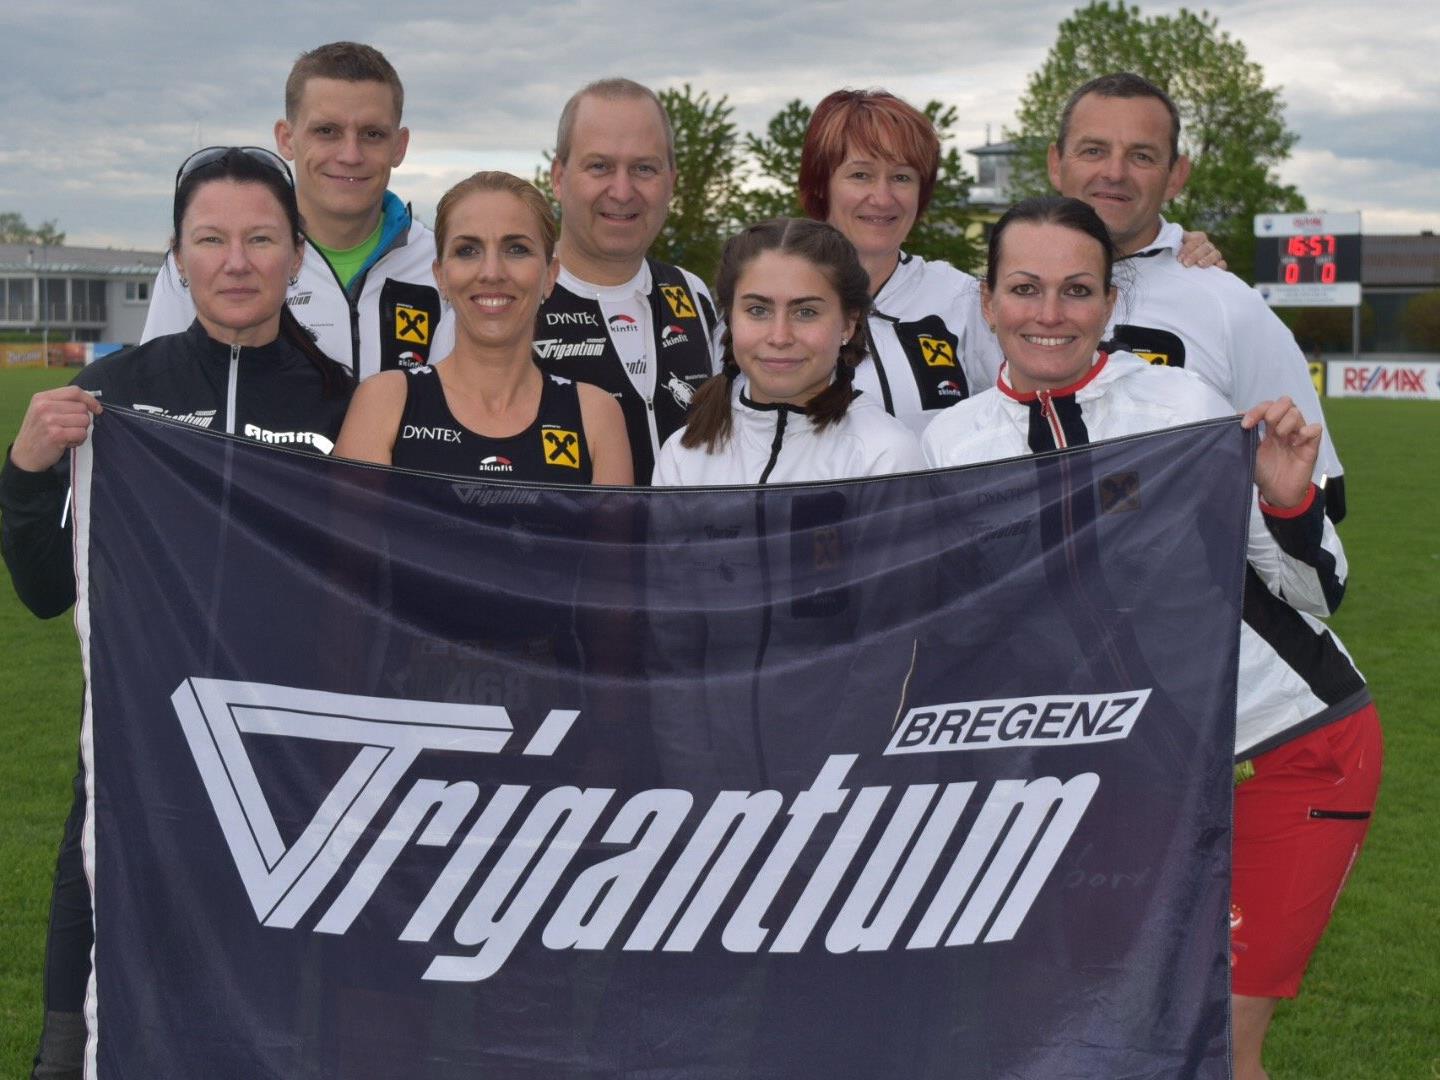 Team Trigantium Bregenz